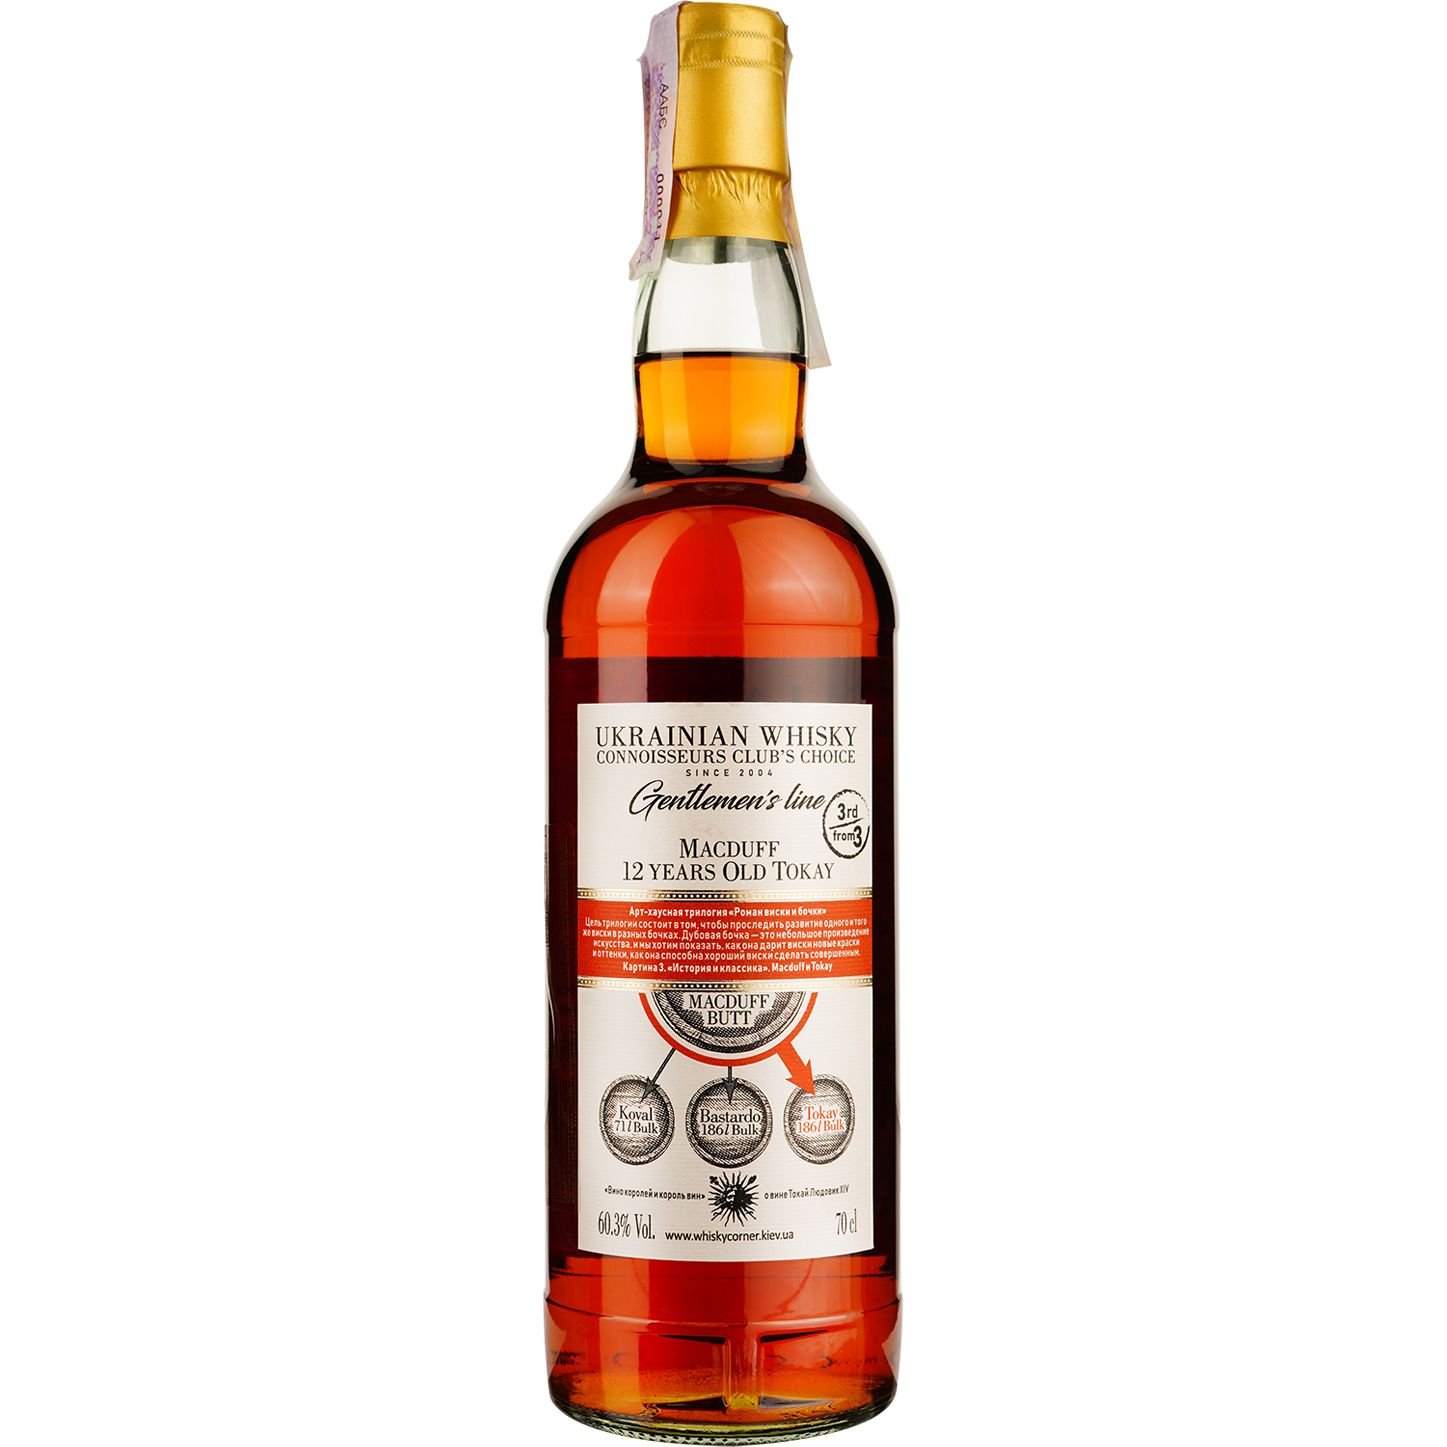 Віскі Macduff 12 Years Old Tokay Single Malt Scotch Whisky, у подарунковій упаковці, 60,3%, 0,7 л - фото 4